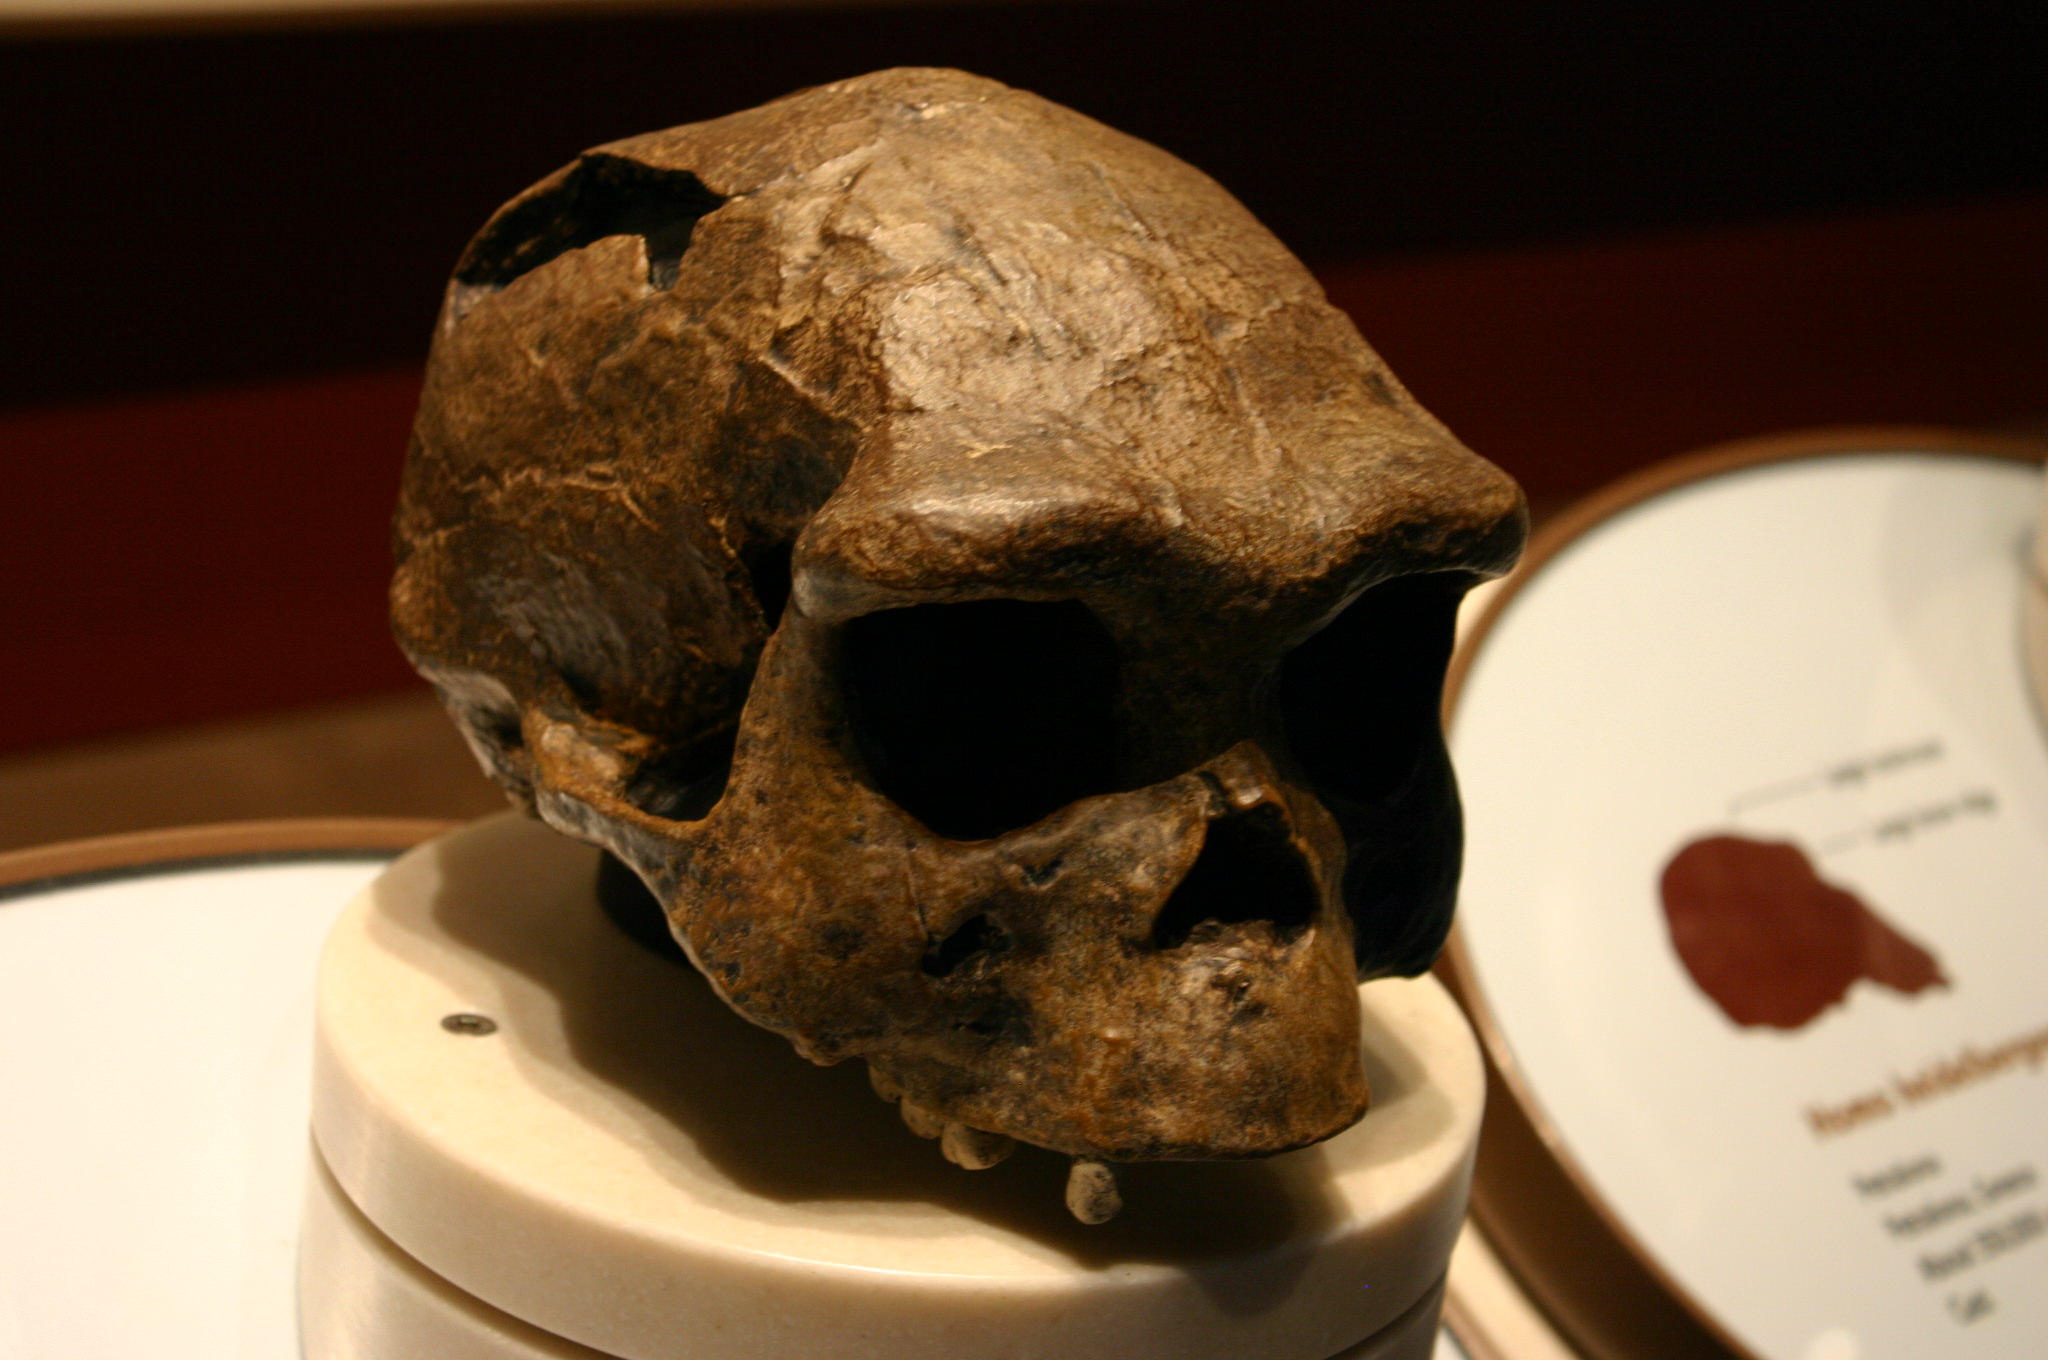 اسکلت غار Sima de los Huesos به گونه‌ای از انسان‌های اولیه معروف به Homo heidelbergensis اختصاص داده شده است. با این حال، محققان می گویند ساختار اسکلتی شبیه به ساختار نئاندرتال ها است - به طوری که برخی می گویند مردم سیما د لوس هوئسوس در واقع نئاندرتال بودند تا نمایندگان هومو هایدلبرگنسیس.